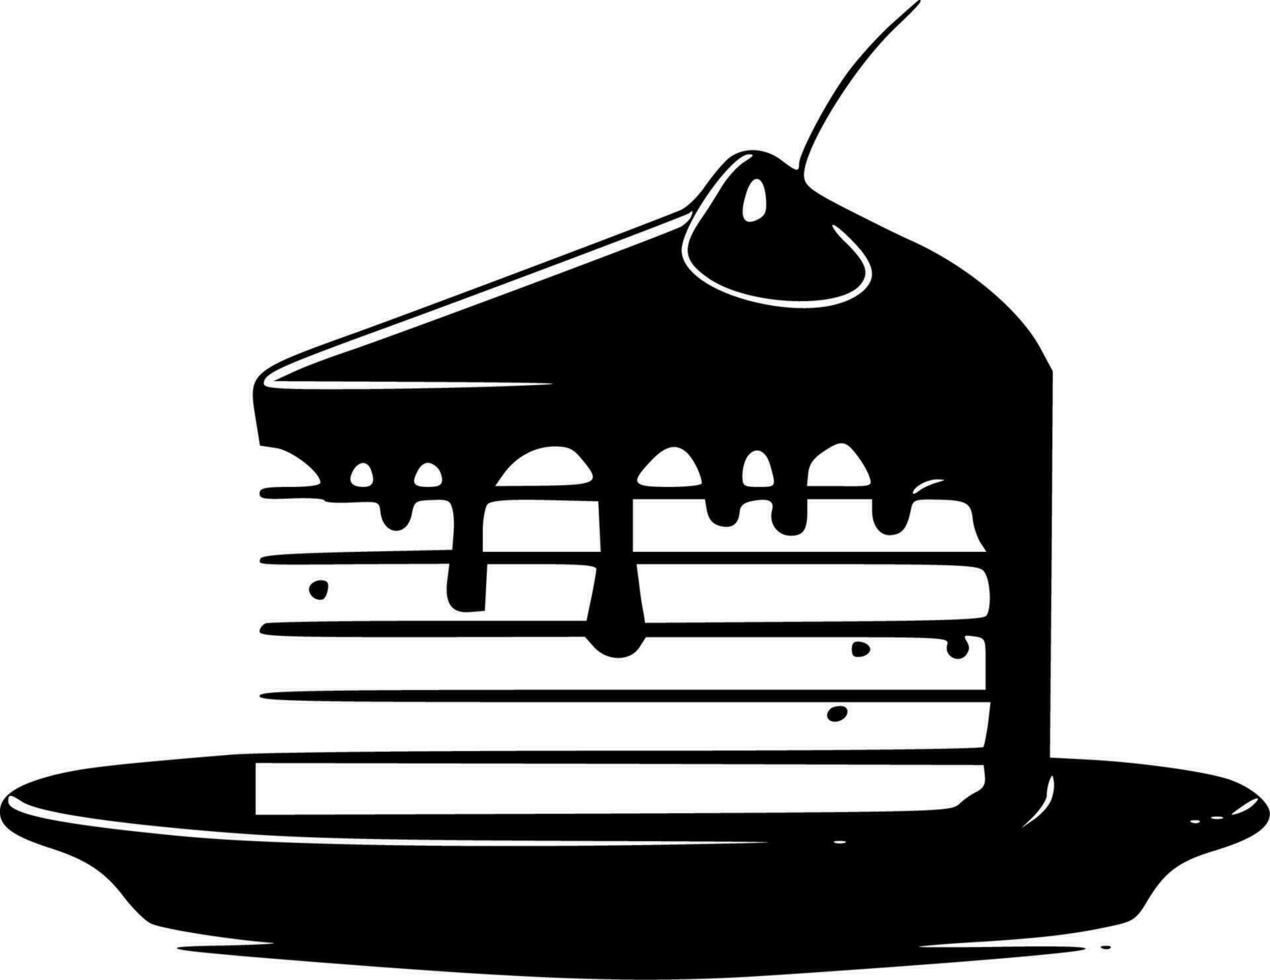 födelsedag kaka, svart och vit vektor illustration